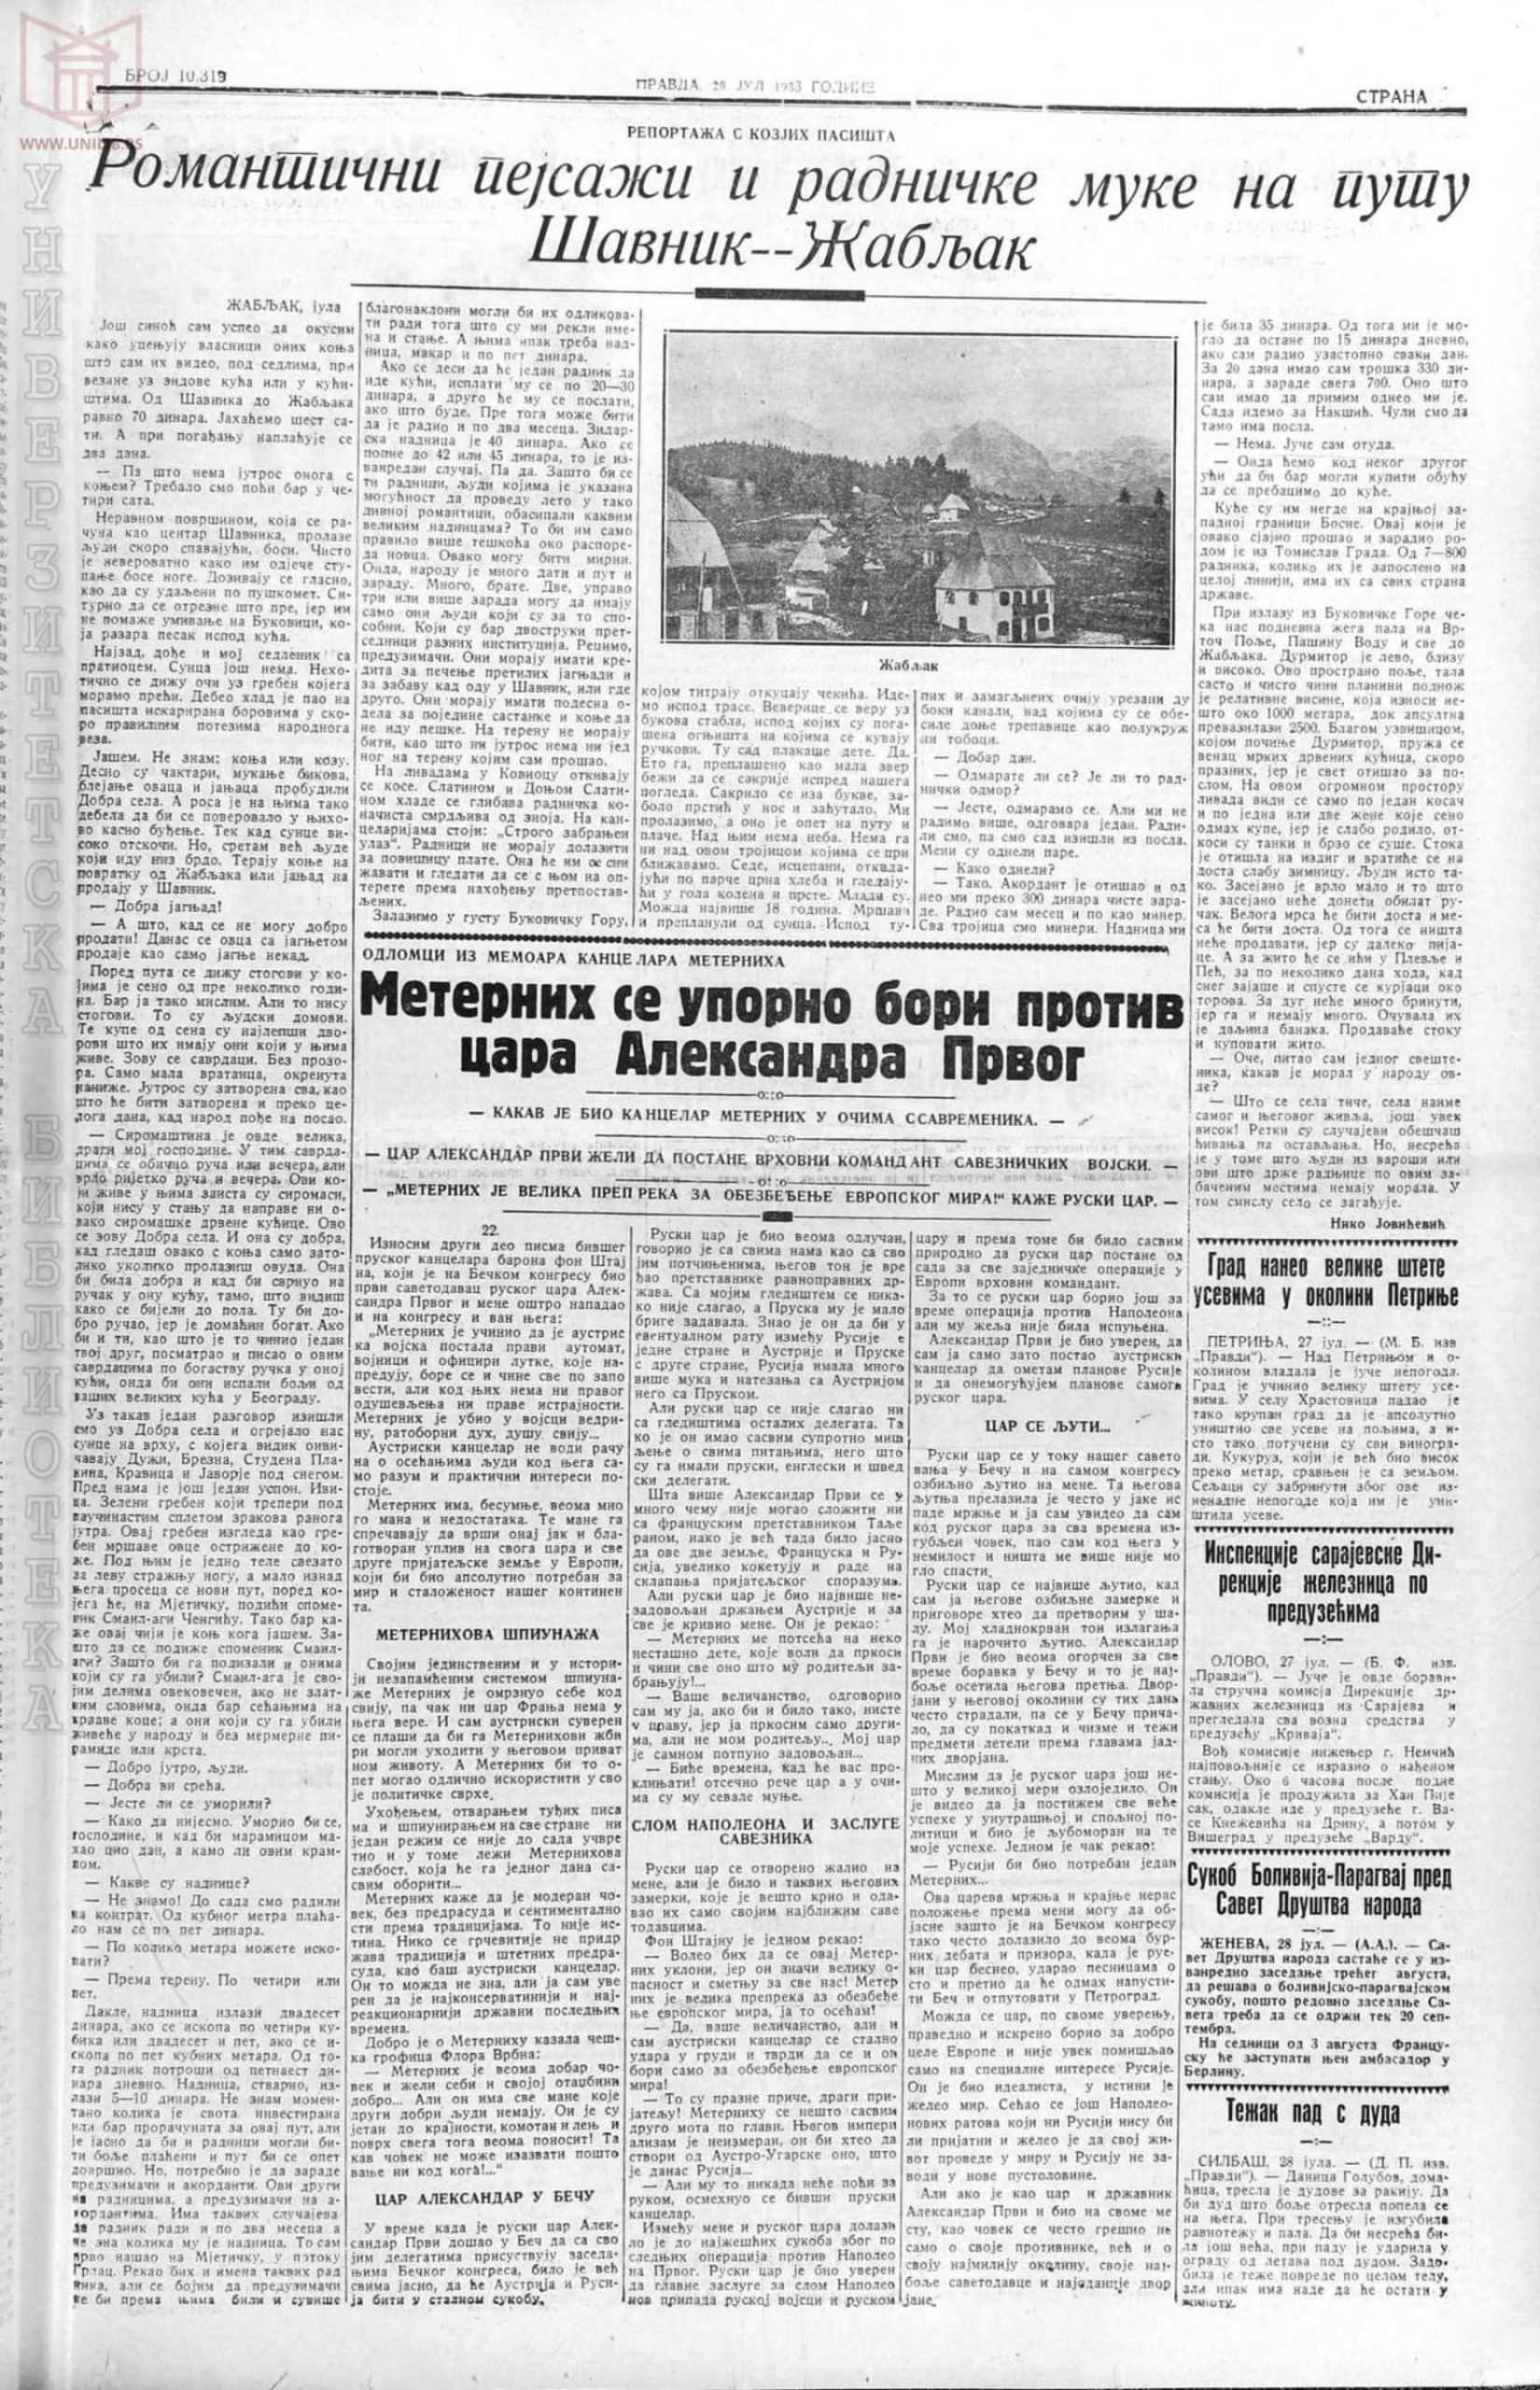 Pravda 29.07.1933 p5-1